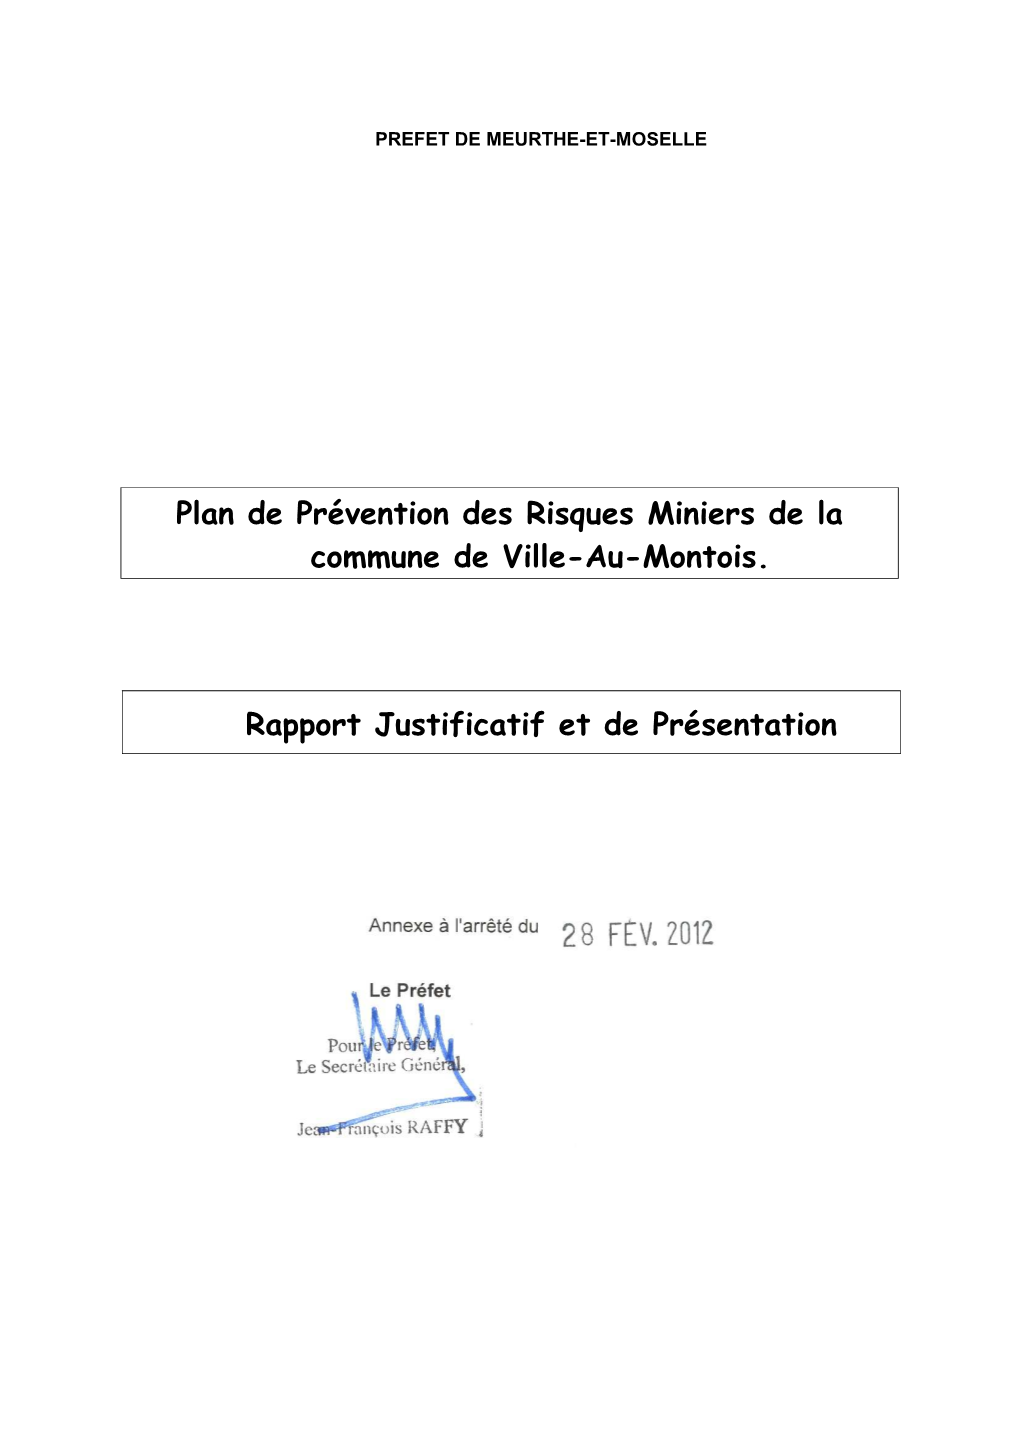 Plan De Prévention Des Risques Miniers De La Commune De Ville-Au-Montois